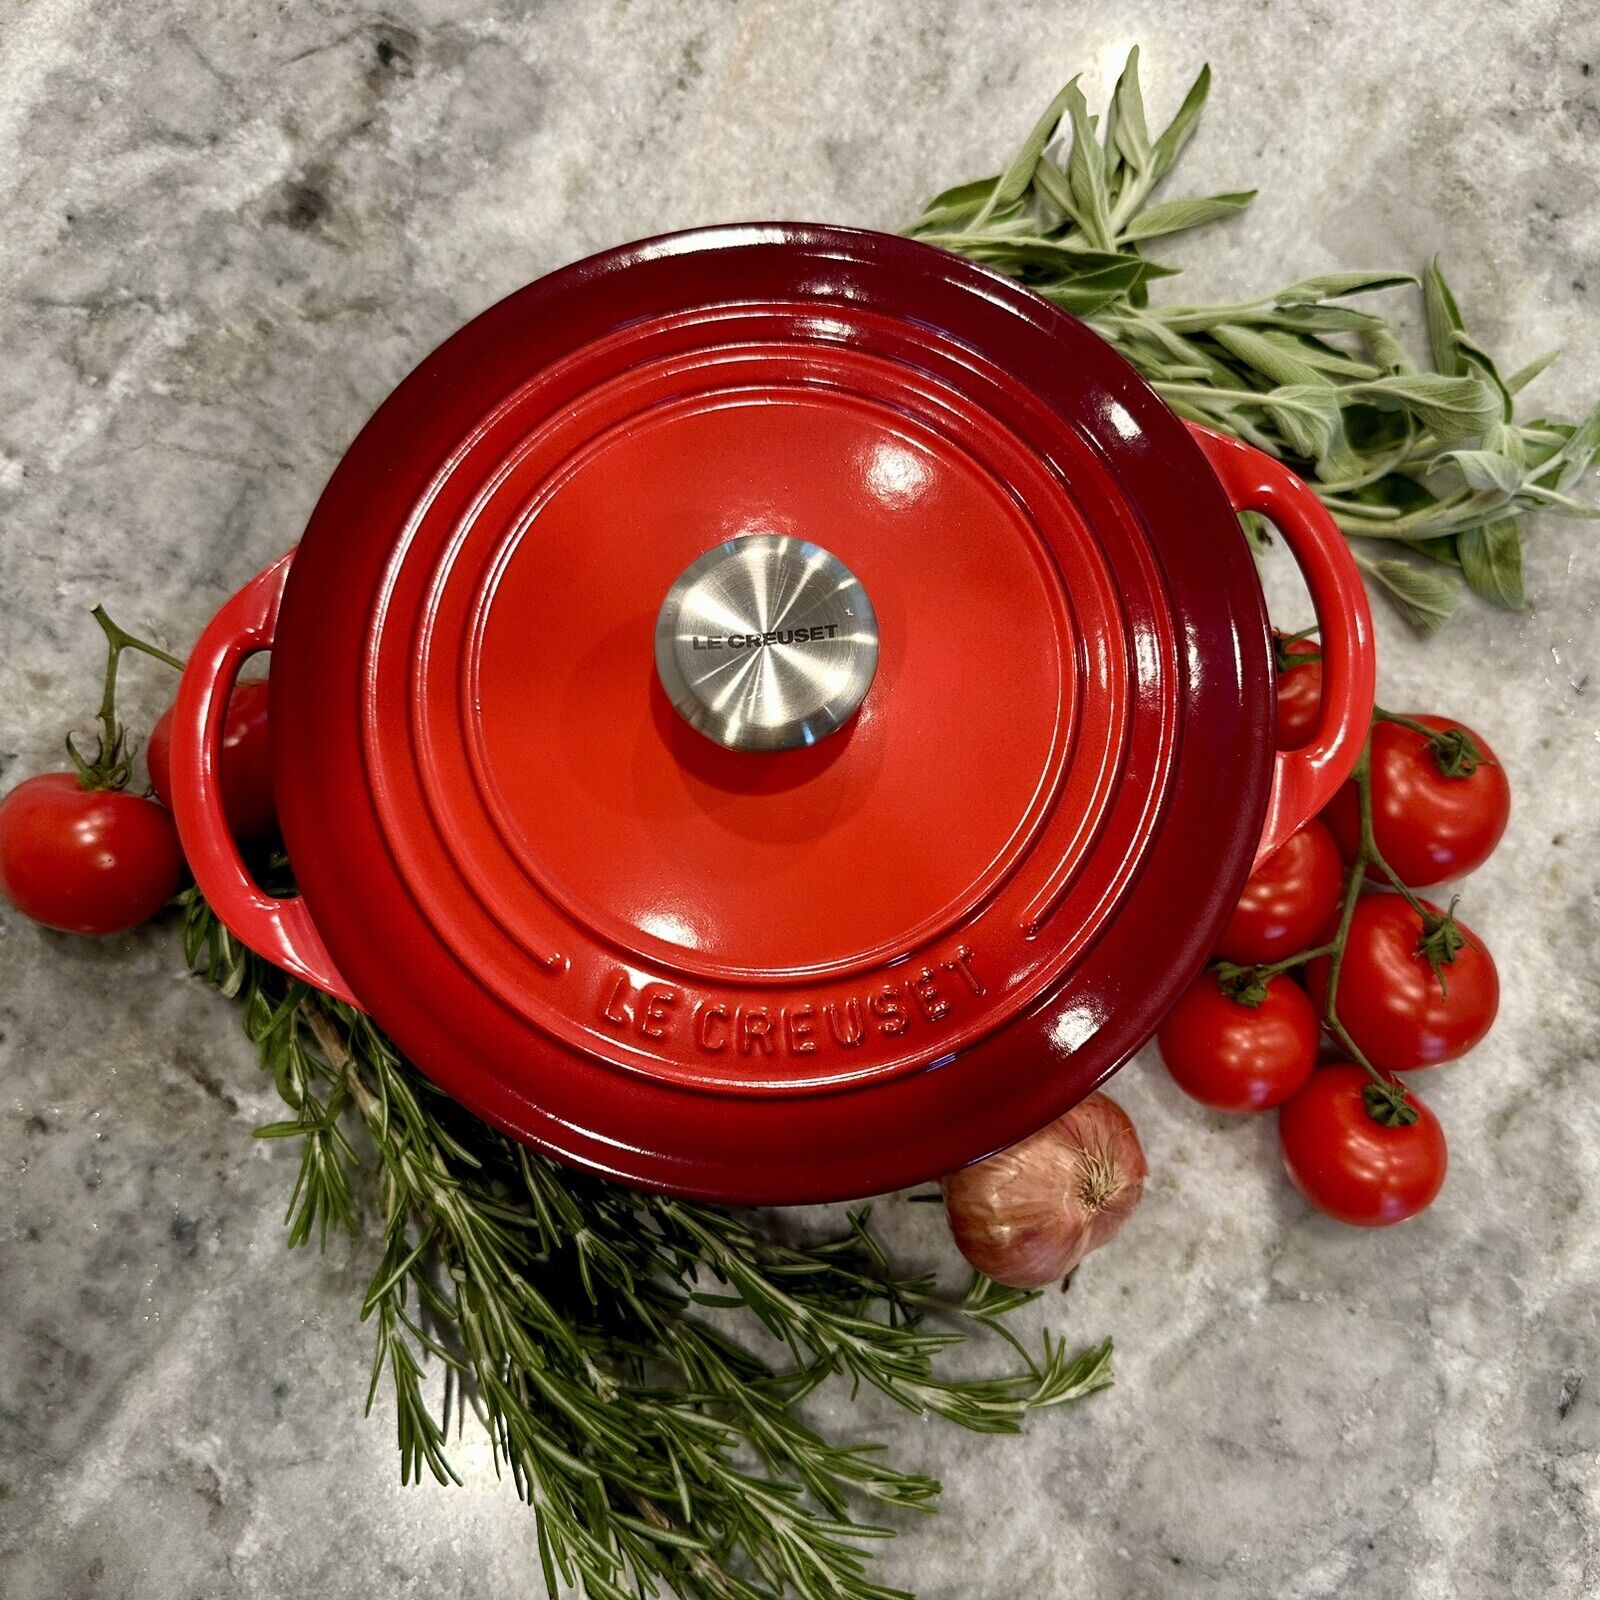 Red Le Creuset Cerise 2.75qt #22 Round Dutch Oven - Excellent Condition